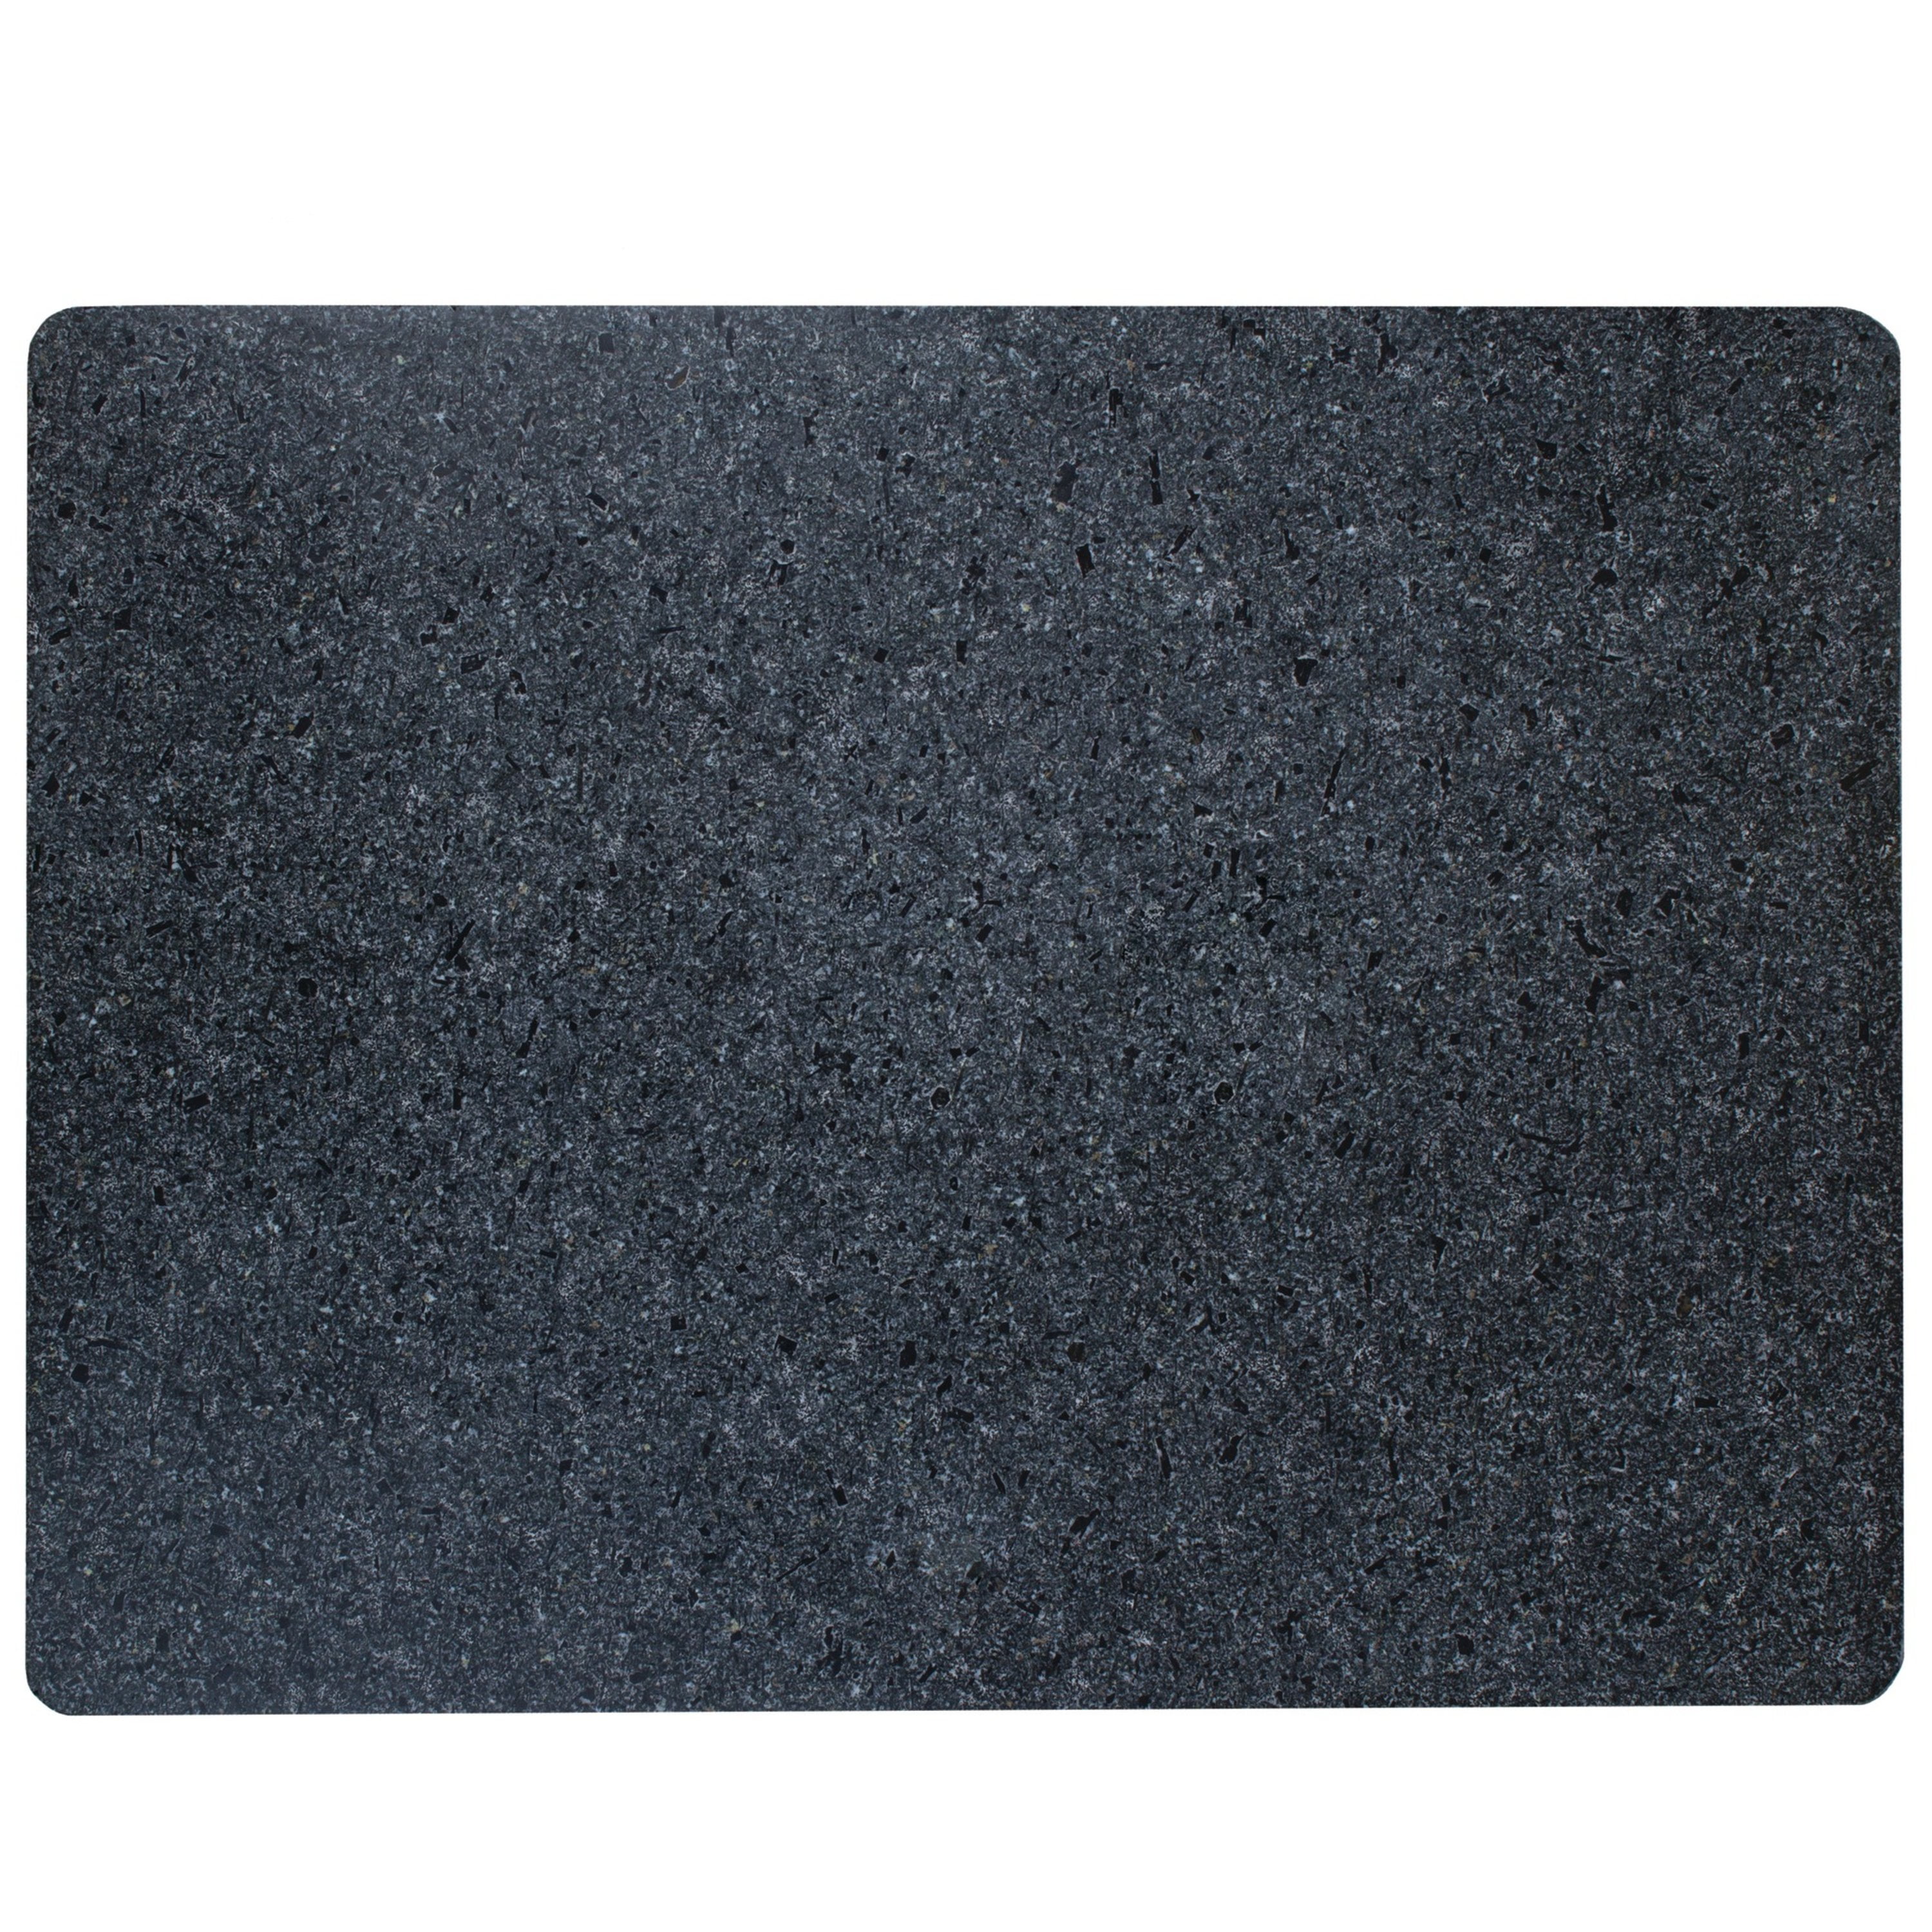 Ktcbg Granite Cutting Board